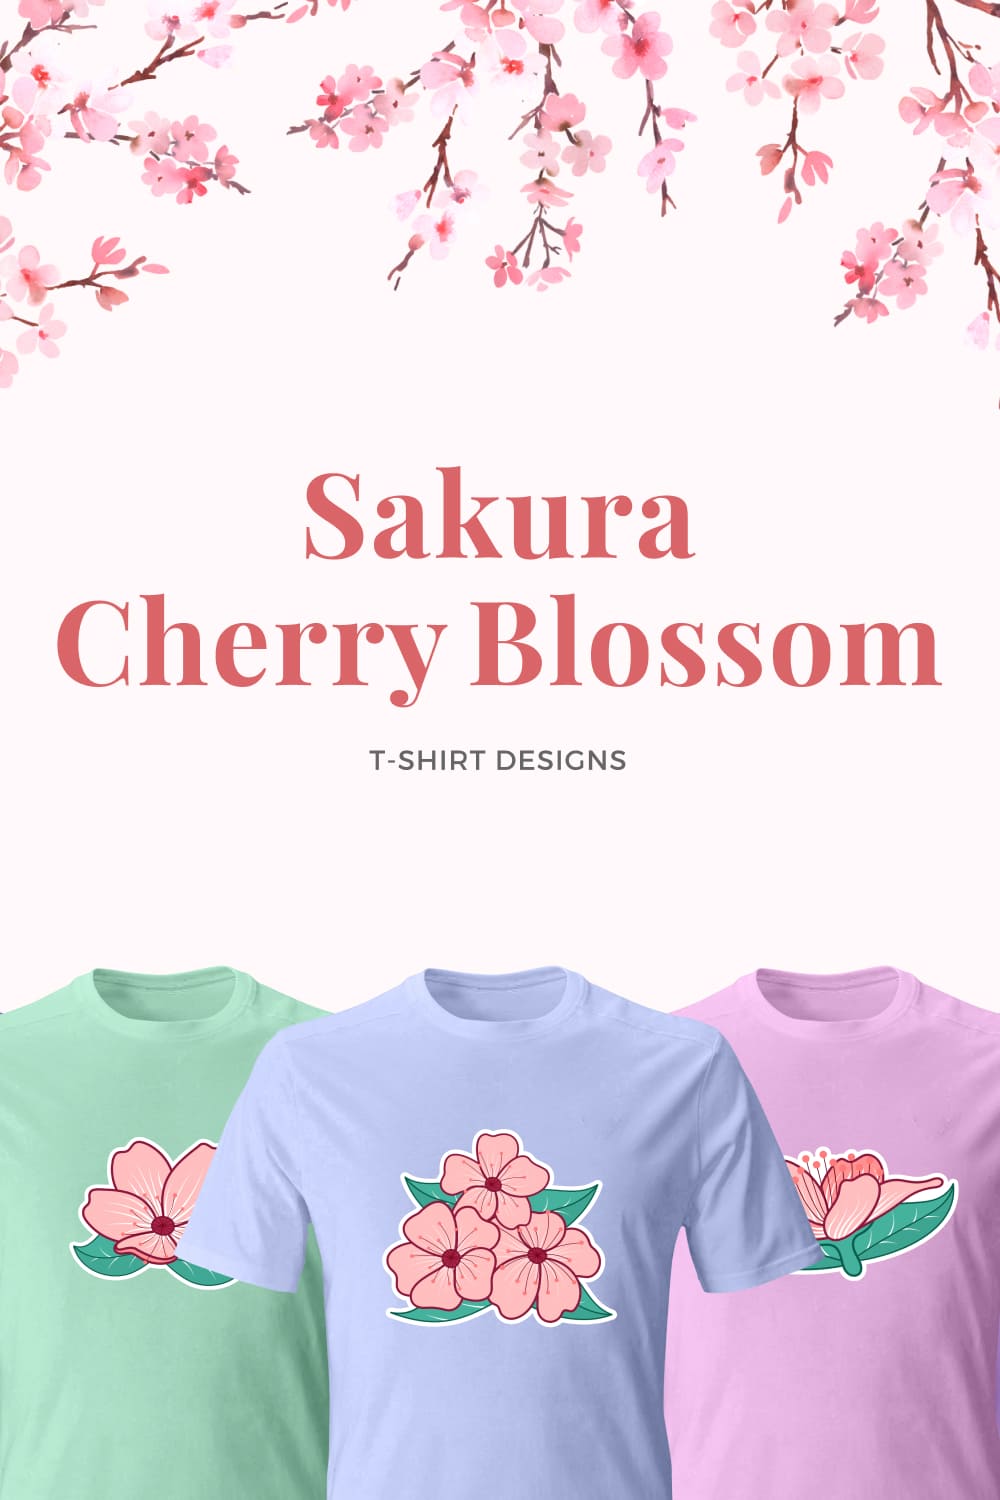 Sakura cherry blossom t shirt designs images of pinterest.